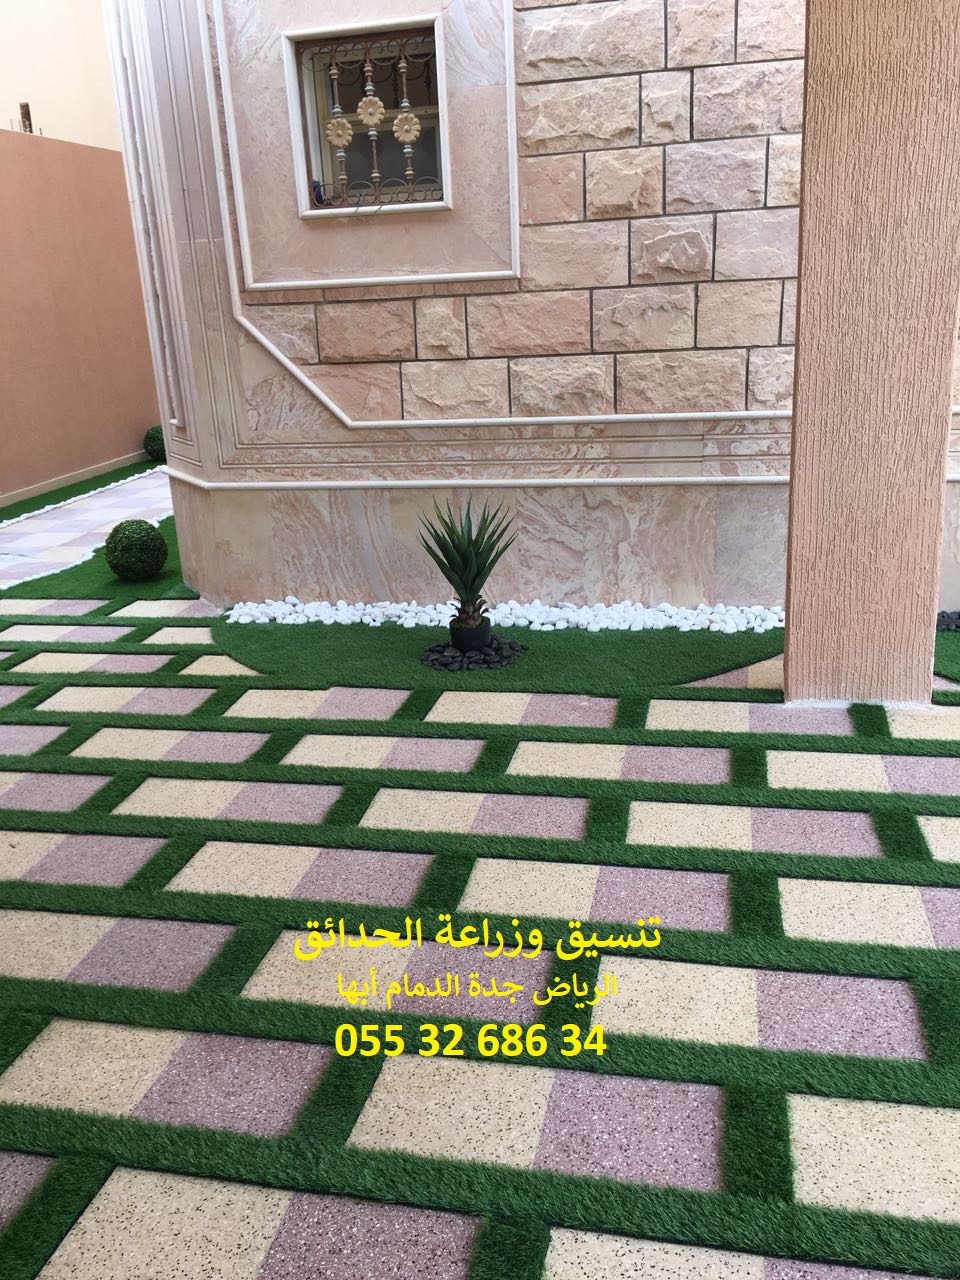 شركة تنسيق حدائق الرياض جدة الدمام ابها 0553268634 P_878vl3nv4